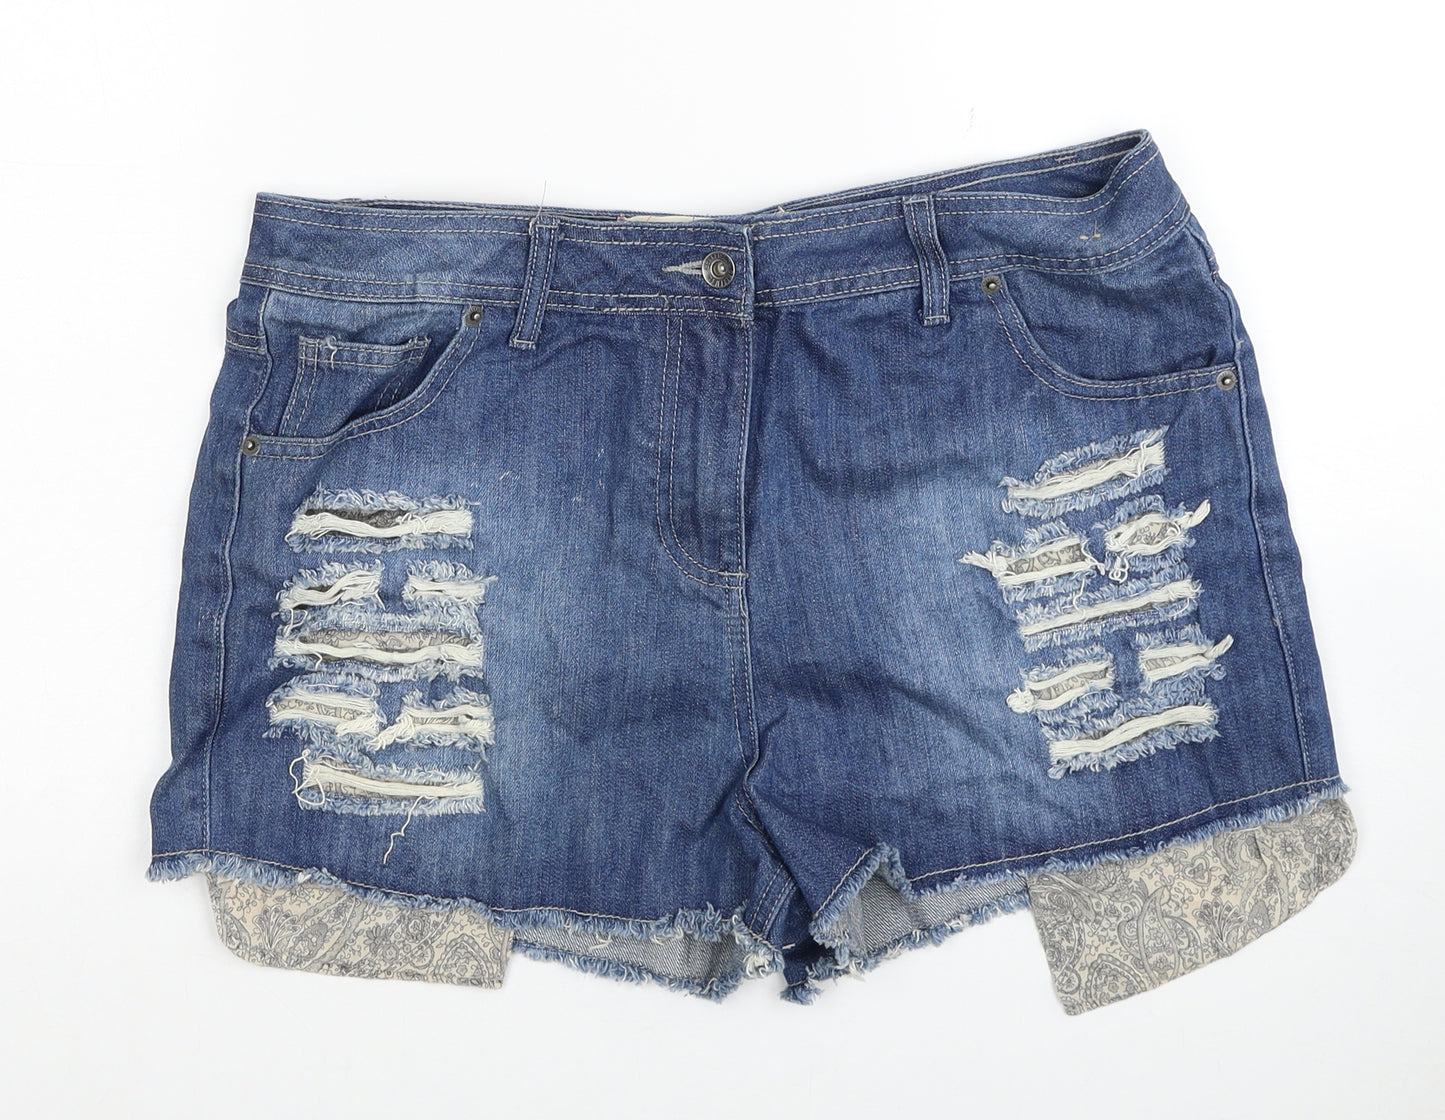 Bellfield Womens Blue Cotton Cut-Off Shorts Size 16 Regular Zip